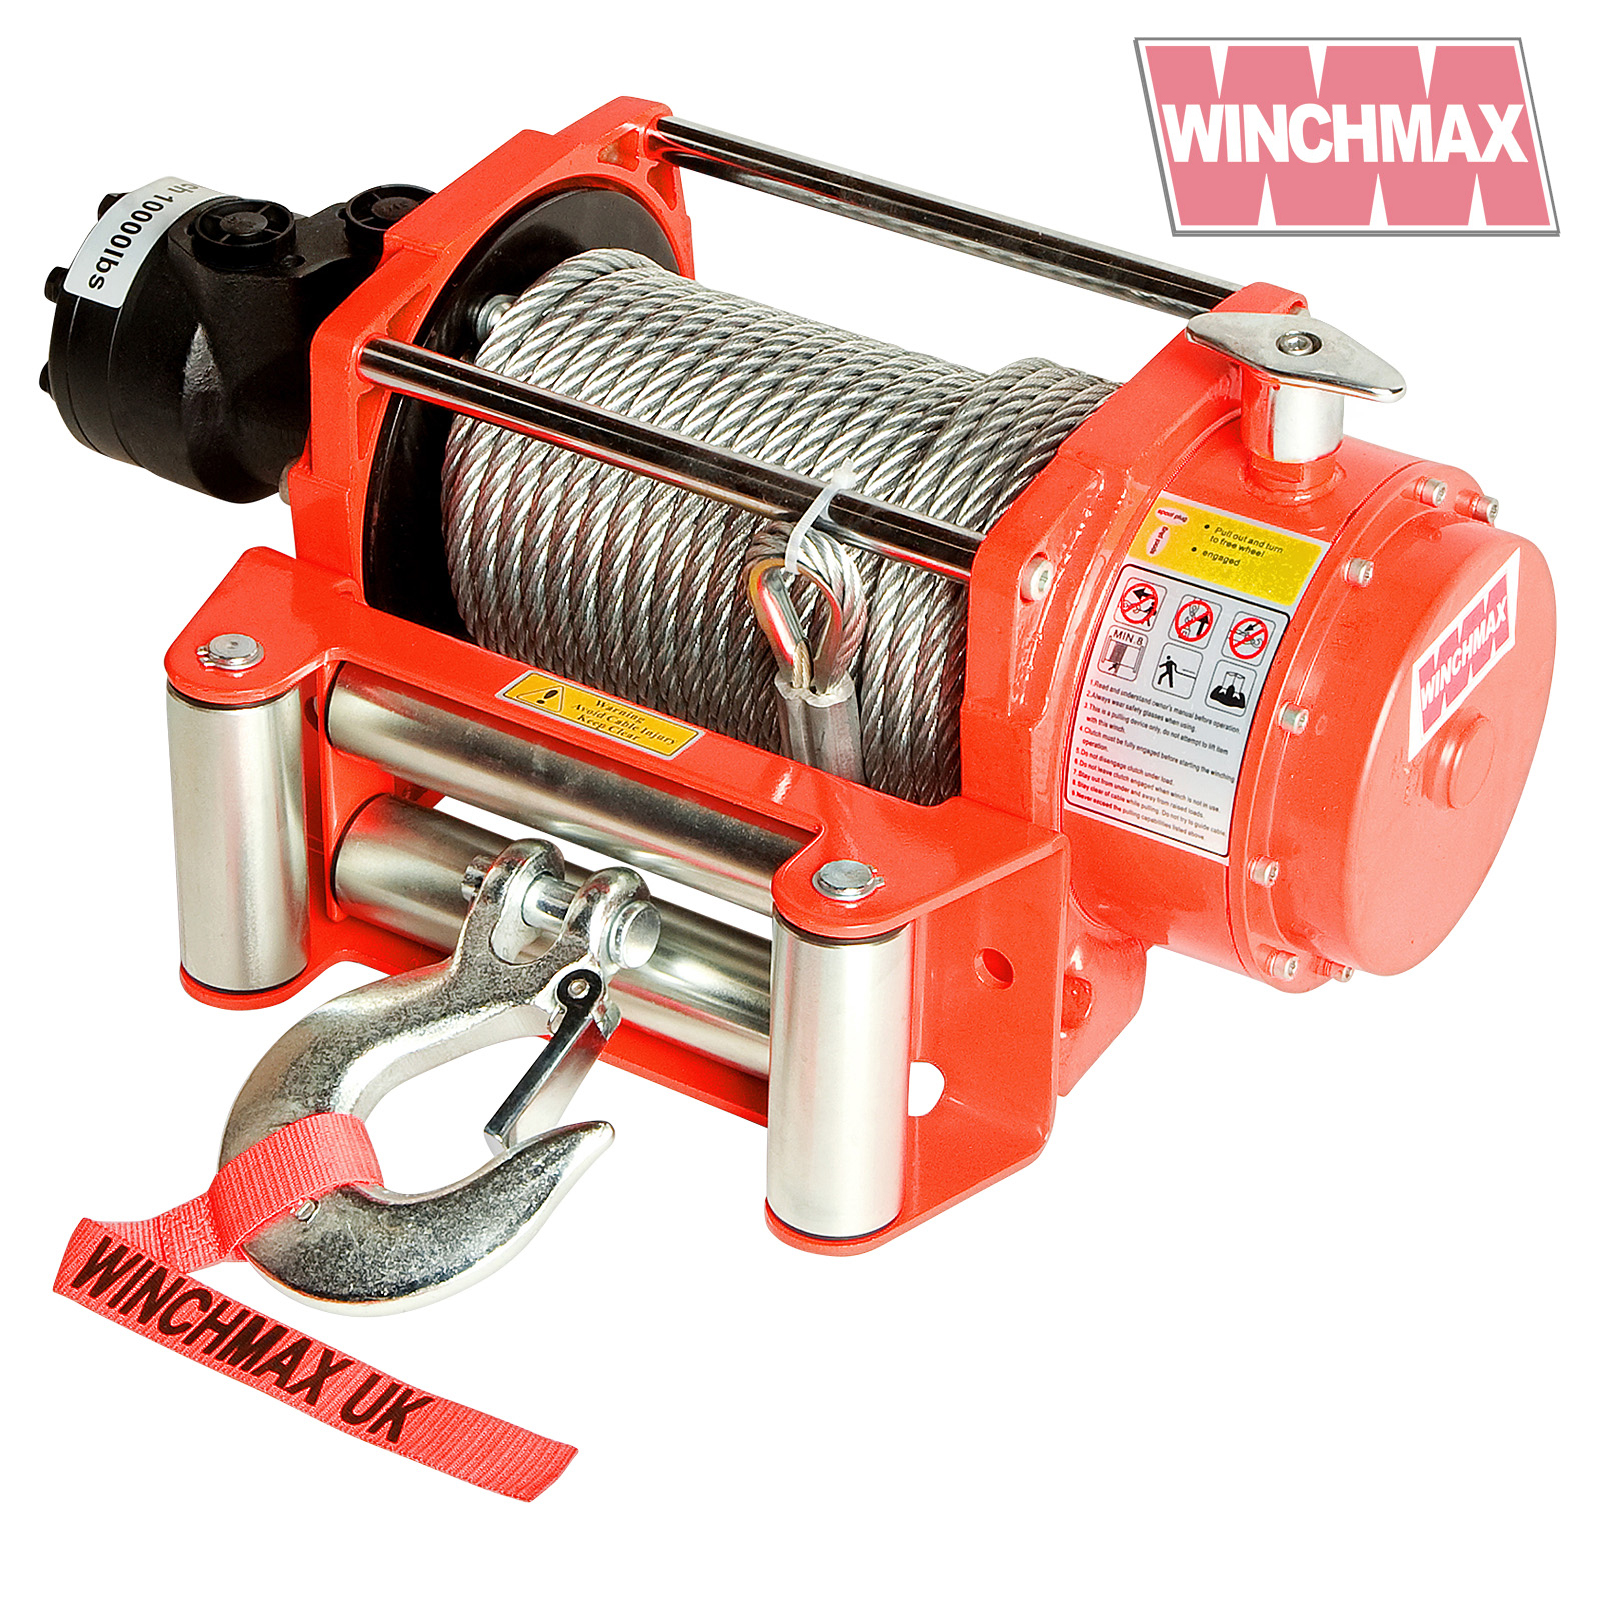 Winchmax 10000lb Hydraulic Winch WM10000HYD-NC